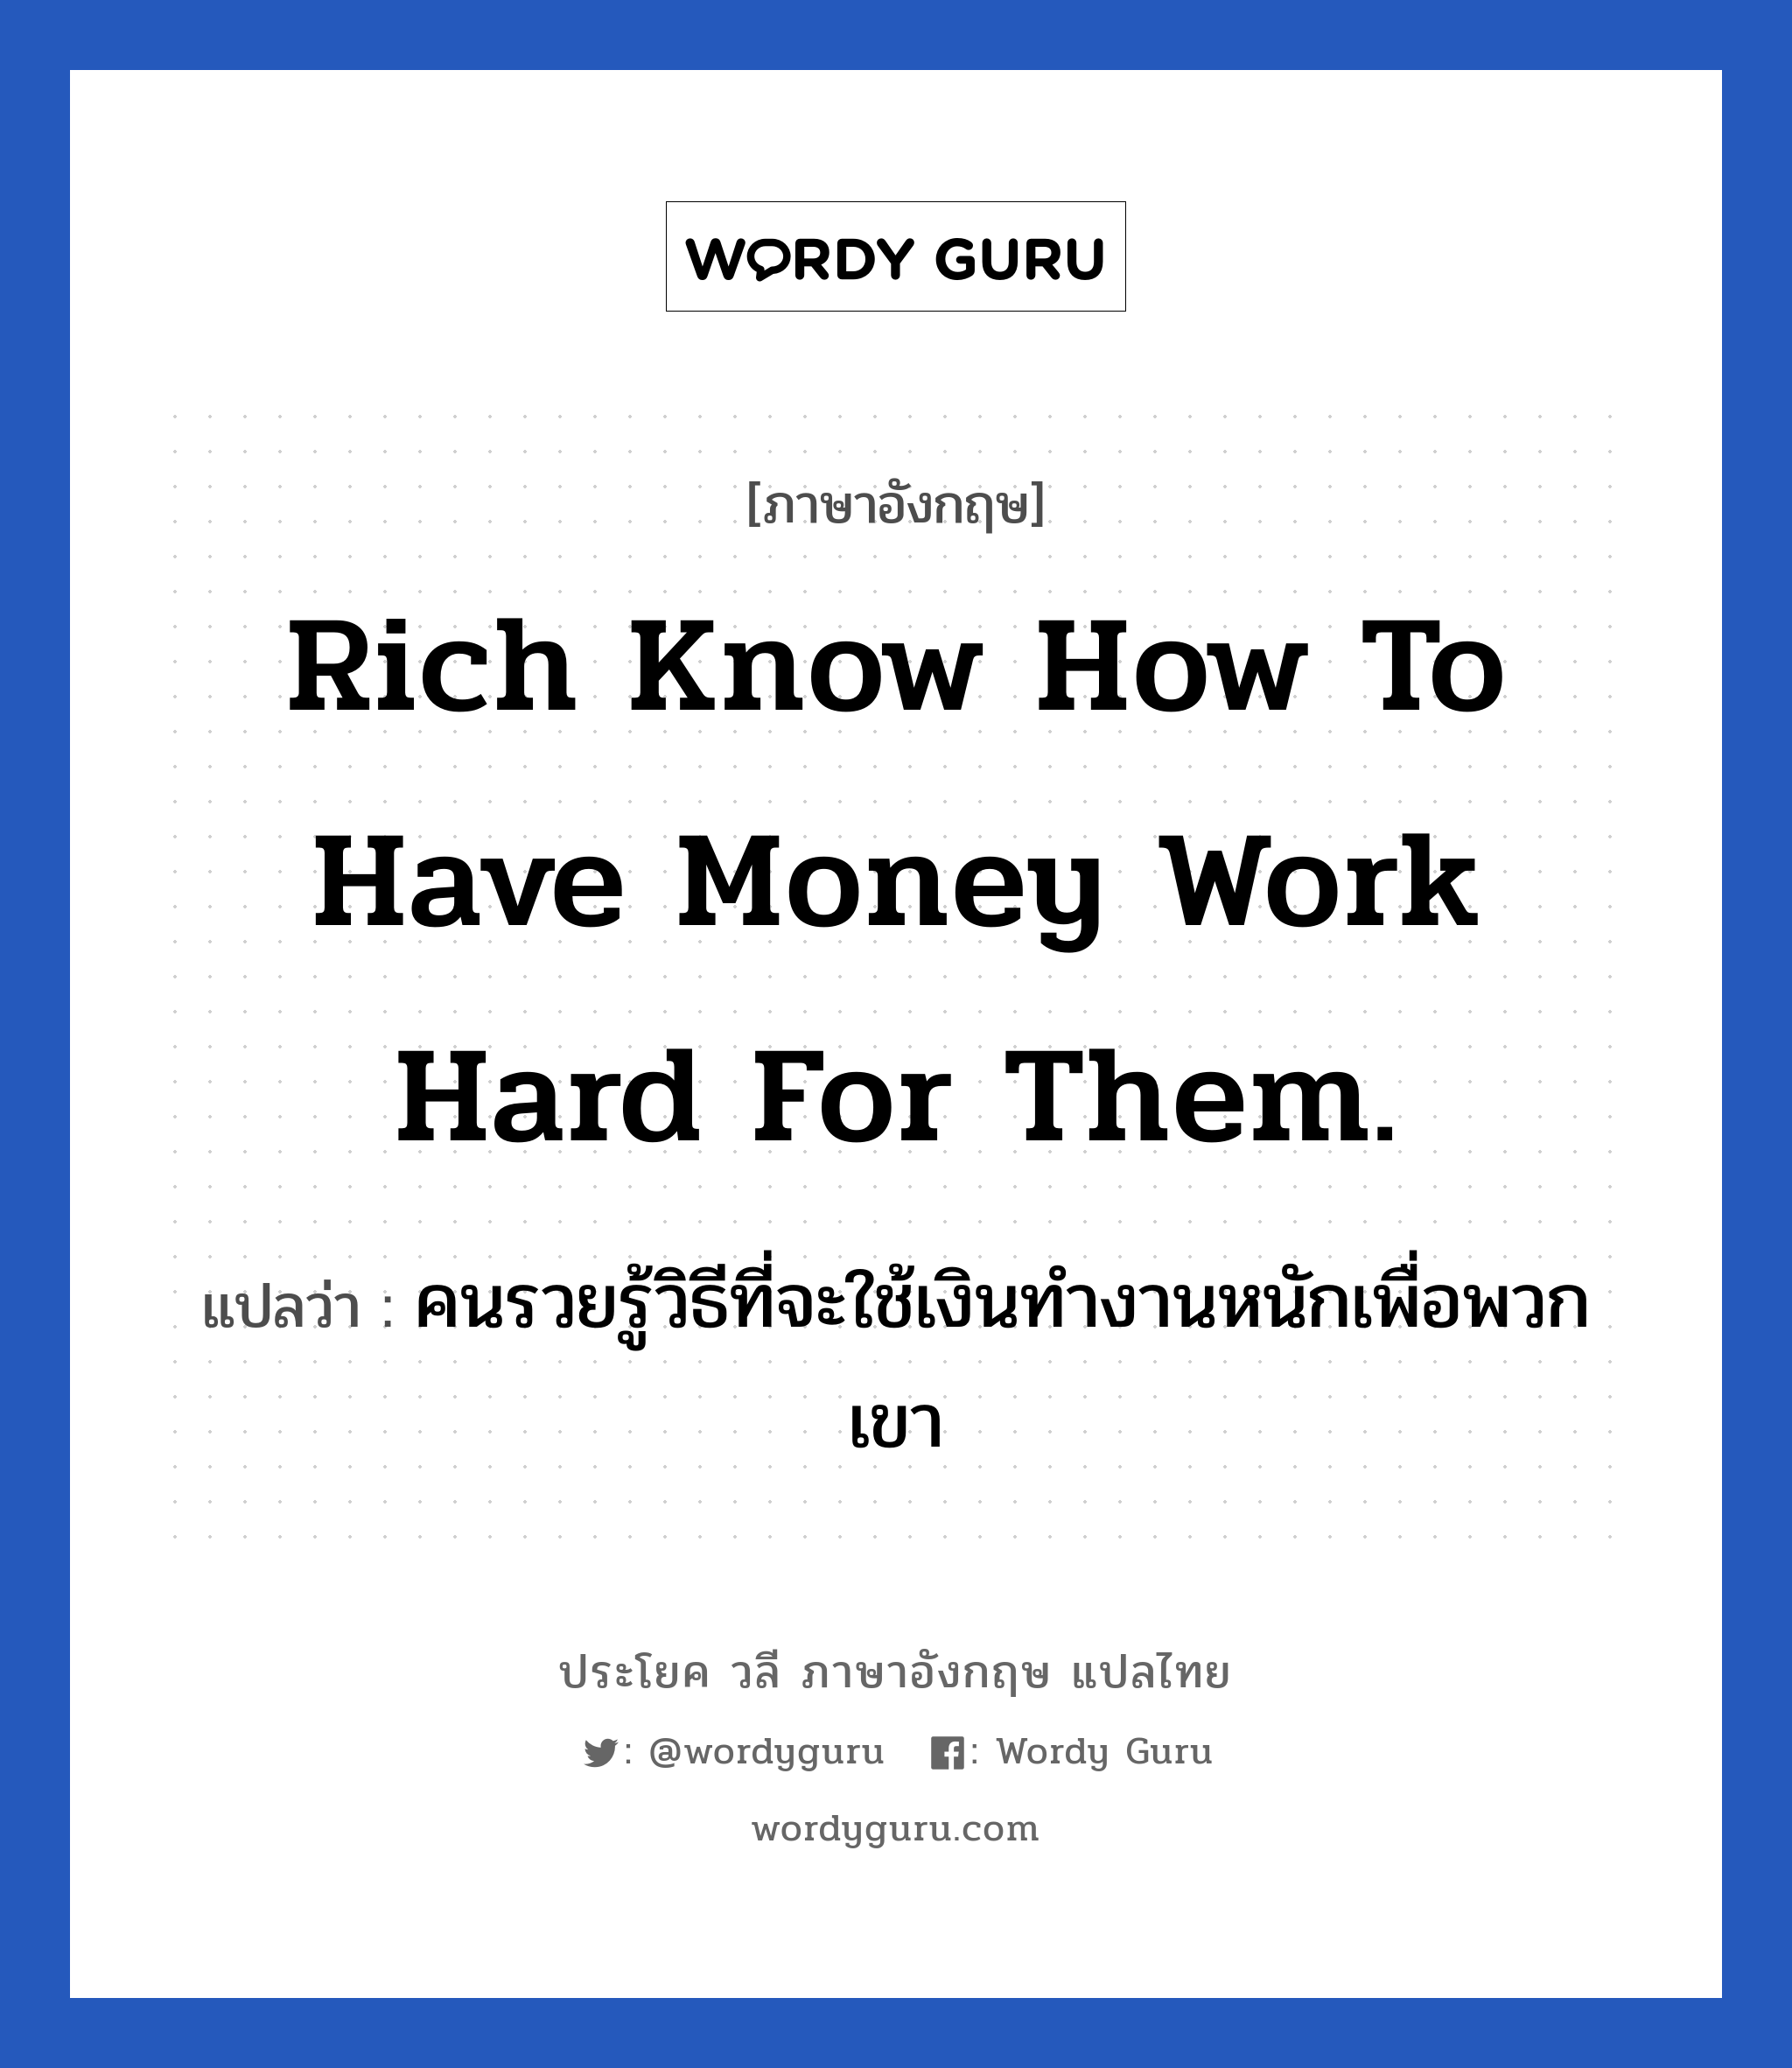 คนรวยรู้วิธีที่จะใช้เงินทำงานหนักเพื่อพวกเขา ภาษาอังกฤษ?, วลีภาษาอังกฤษ คนรวยรู้วิธีที่จะใช้เงินทำงานหนักเพื่อพวกเขา แปลว่า Rich know how to have money work hard for them. หมวด ในที่ทำงาน